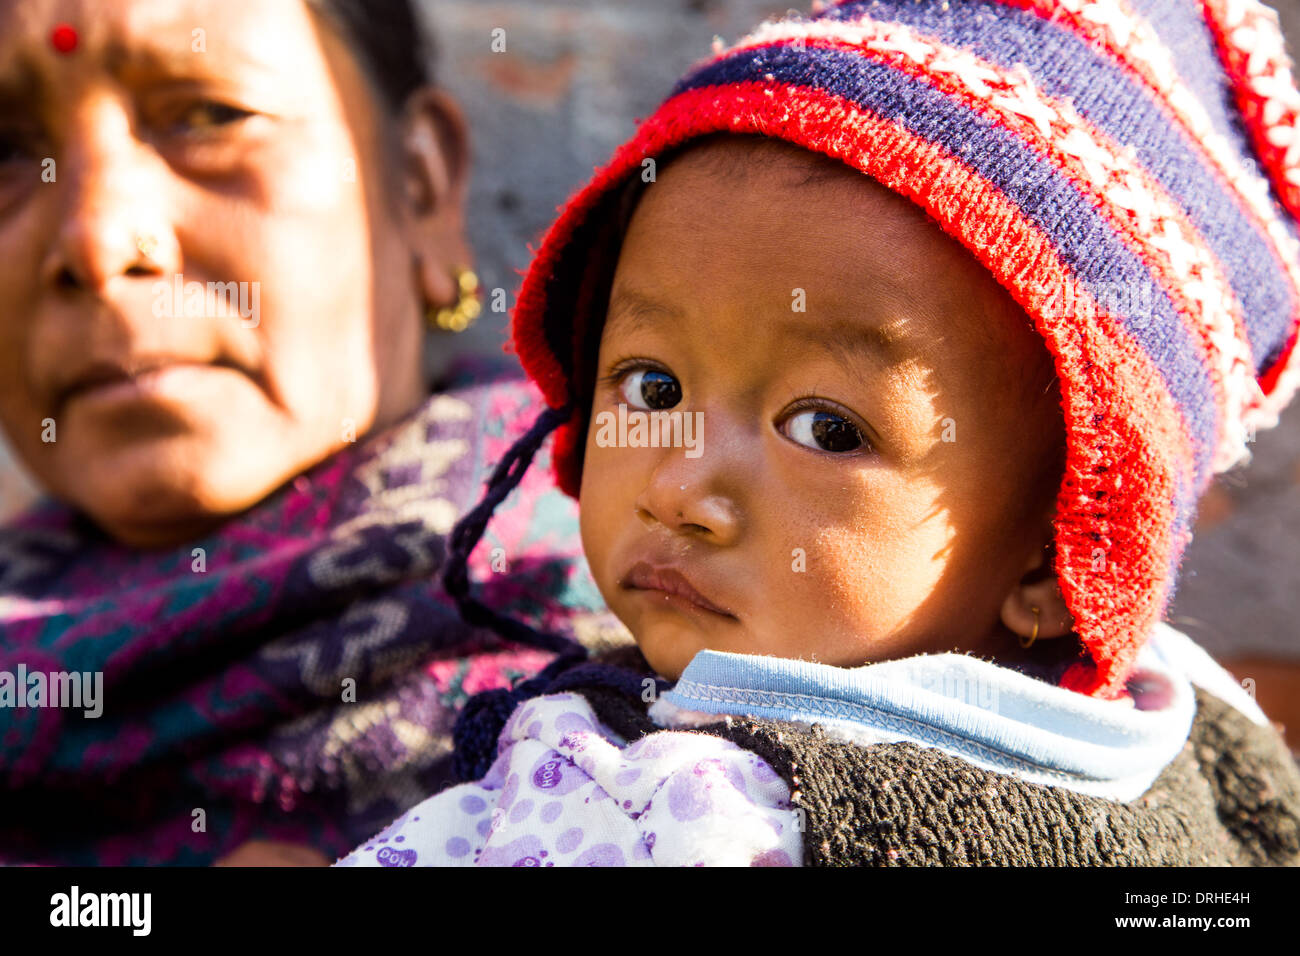 Jeune garçon népalais à Katmandou, Népal Banque D'Images